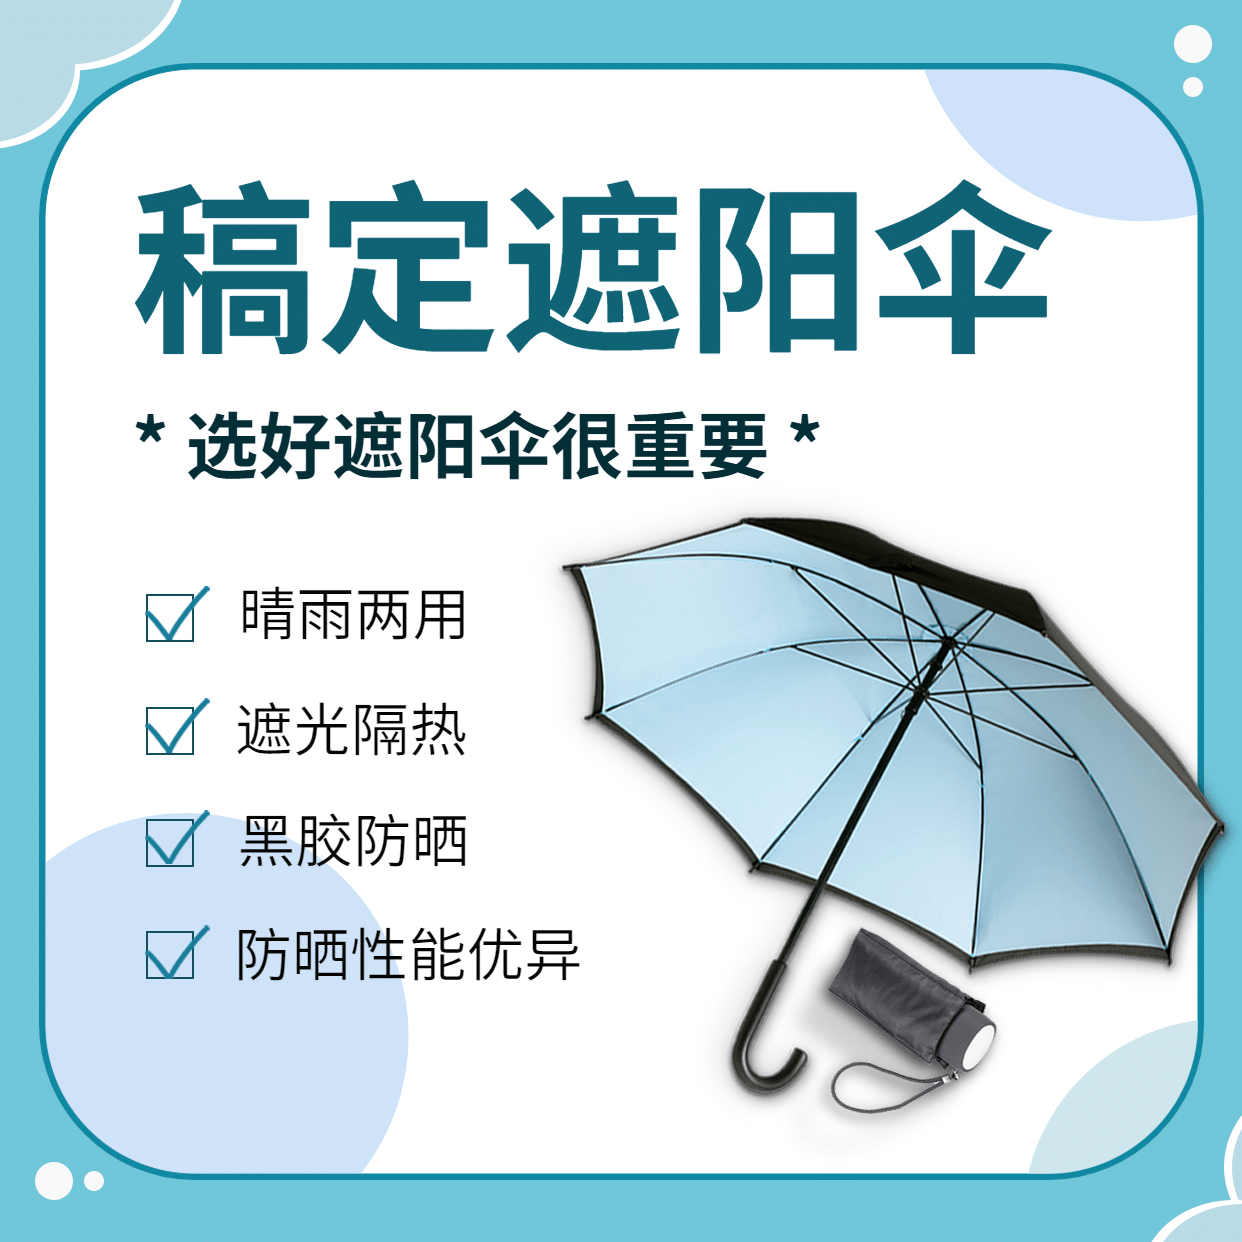 遮阳伞产品展示介绍方形海报